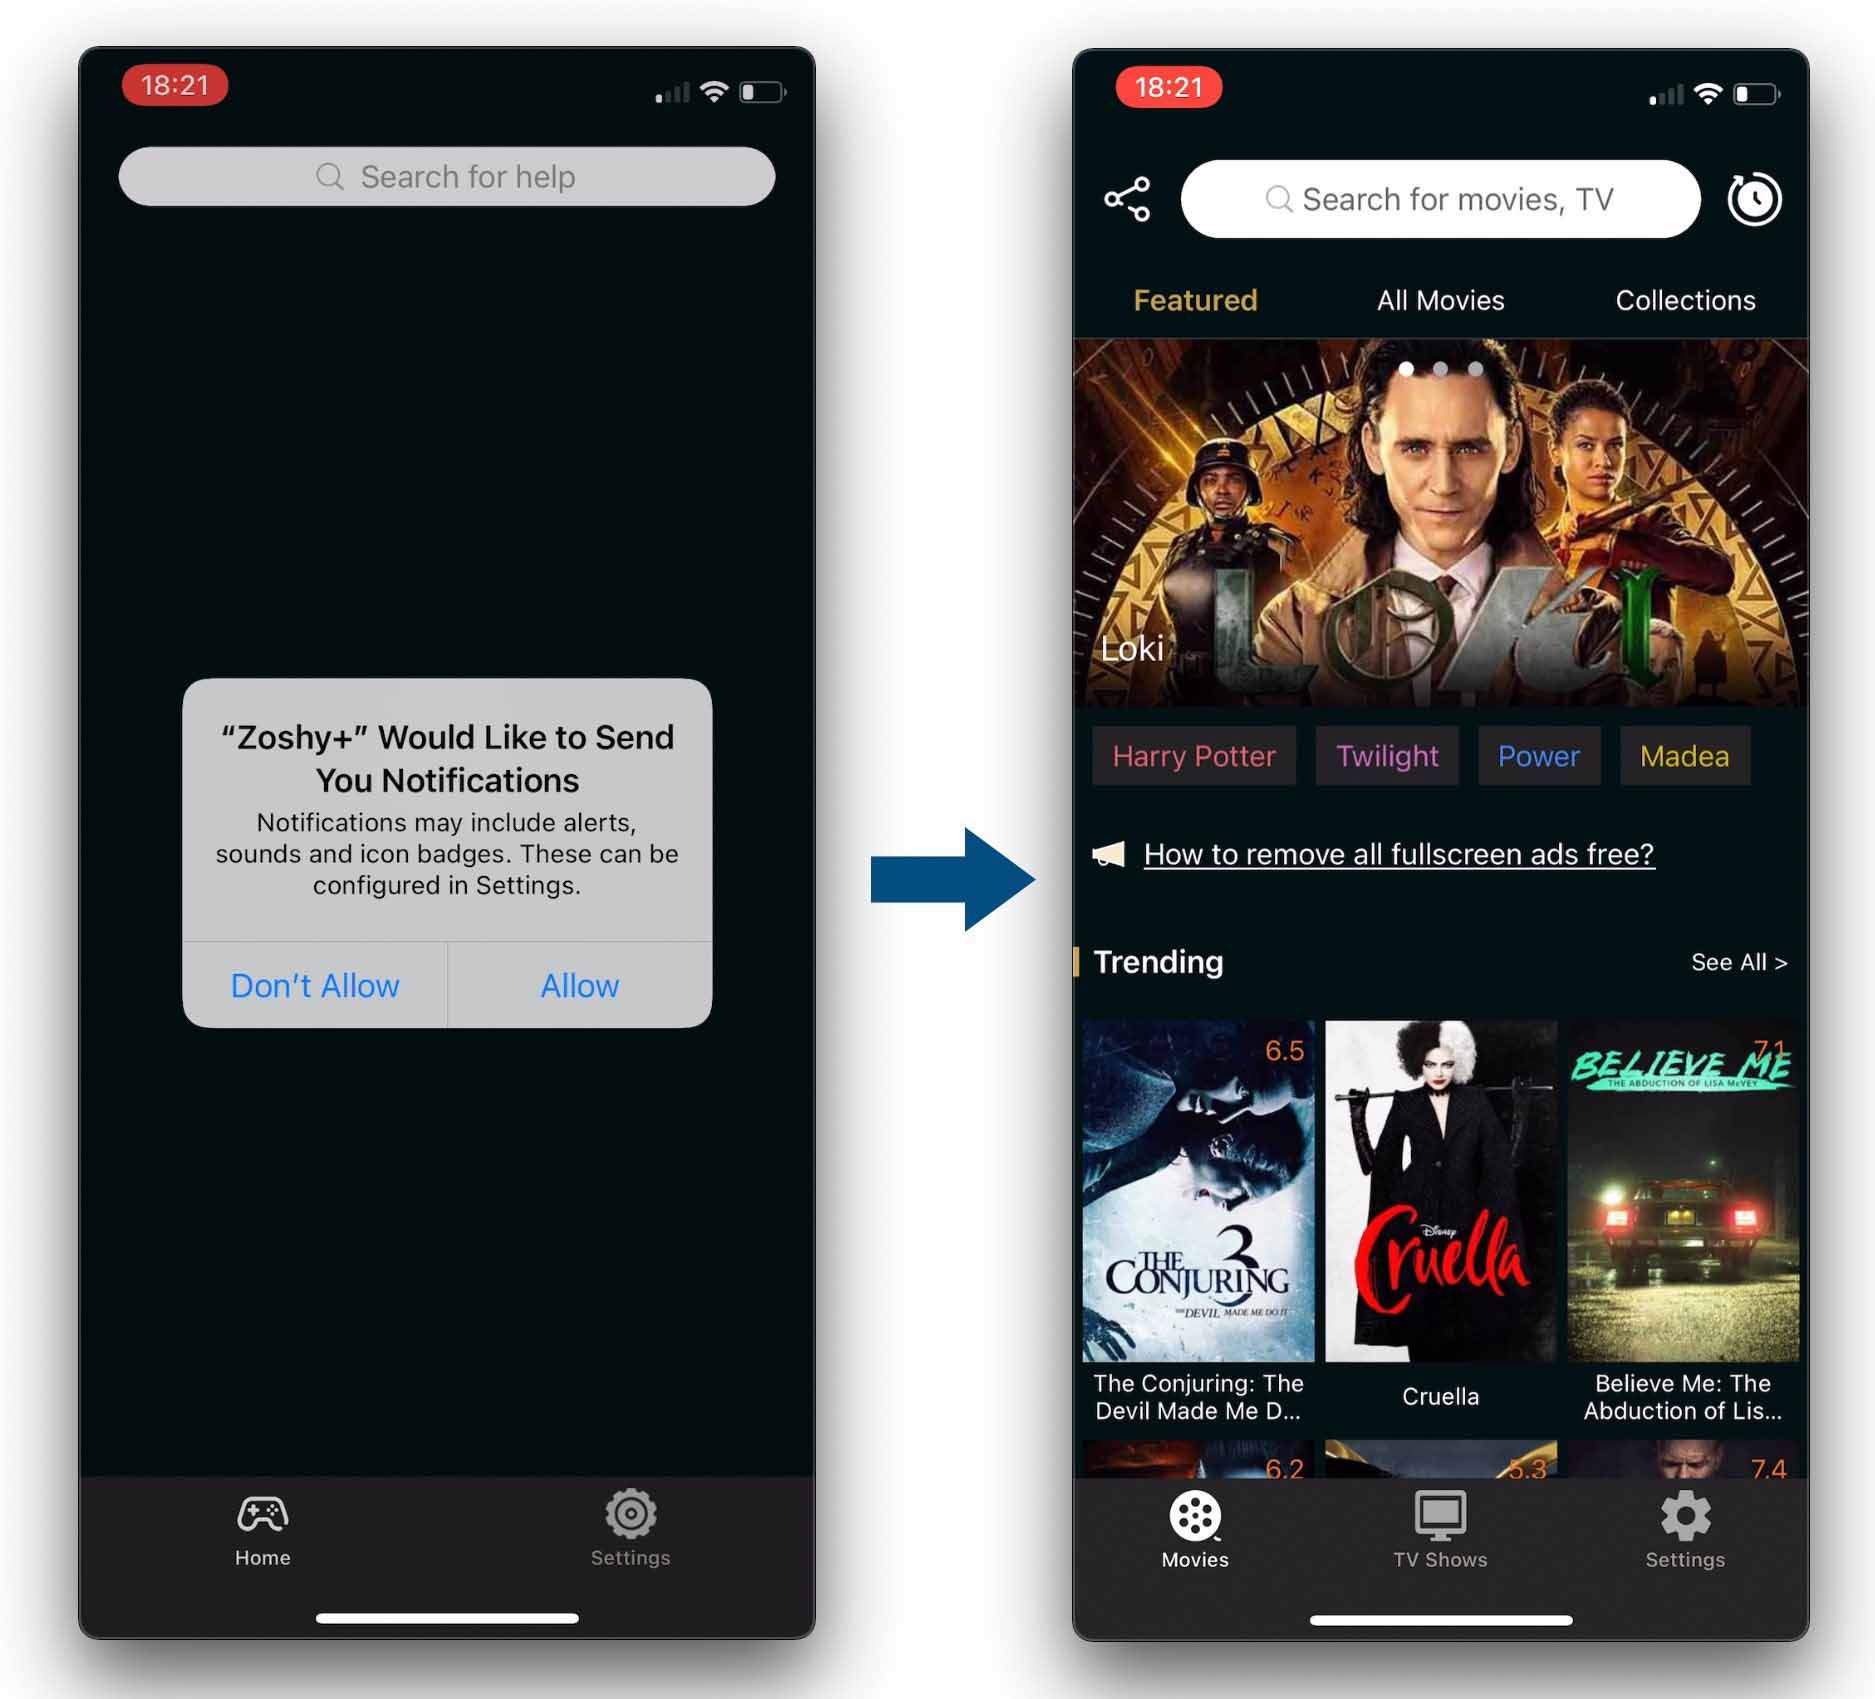 Приложение для пиратских фильмов и телешоу, замаскированное под судоку, поднялось в чартах App Store